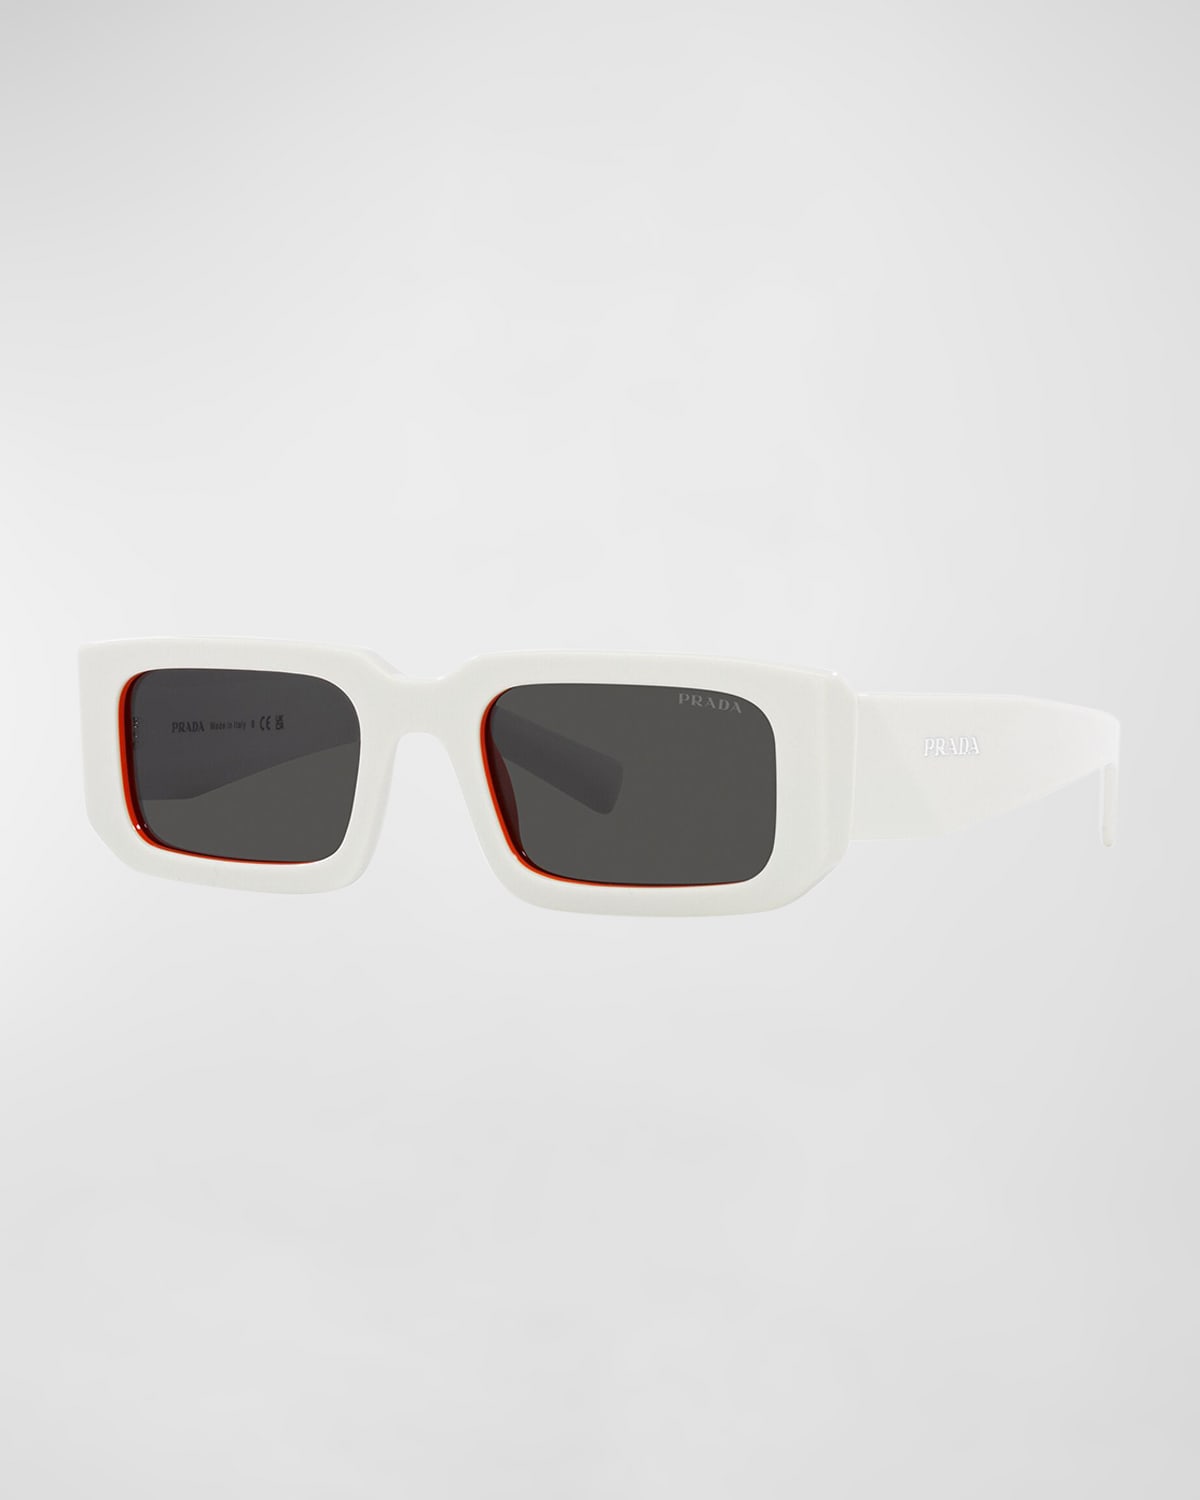 Prada Men's Rectangle Logo Sunglasses In Dark Grey